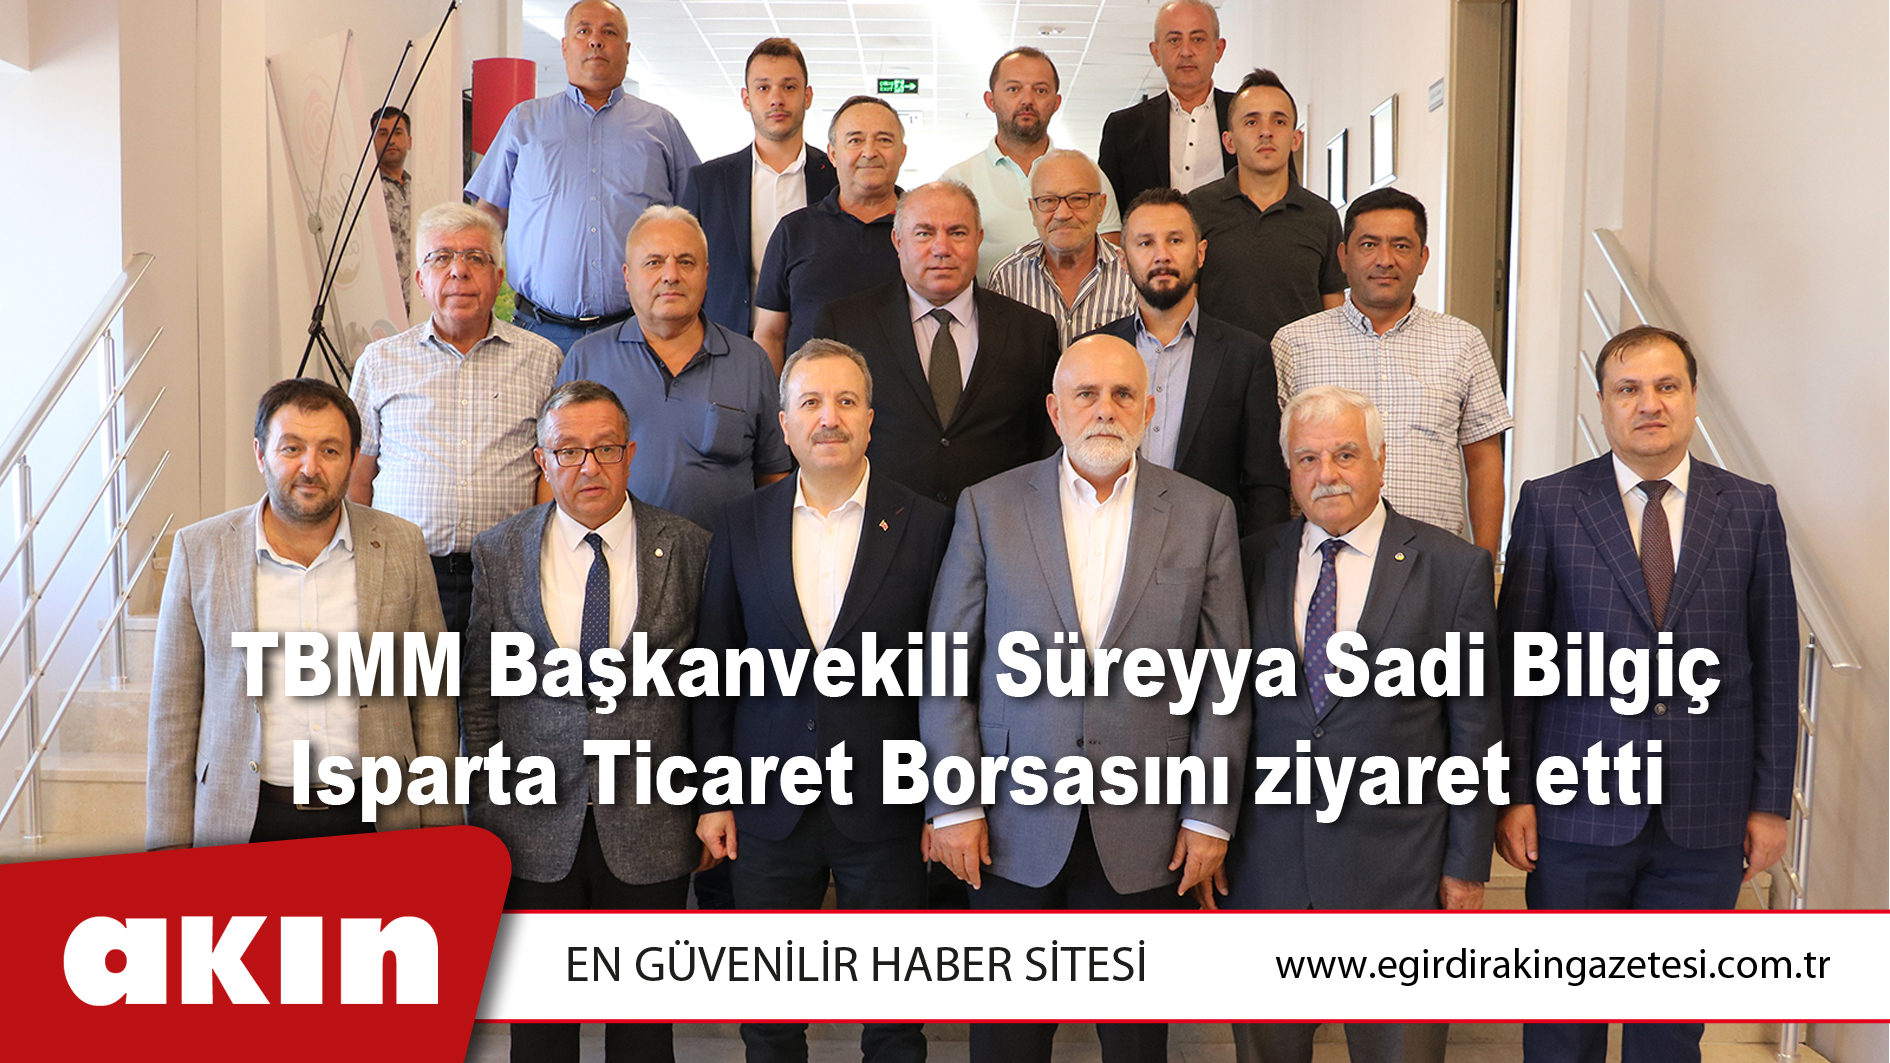 TBMM Başkanvekili Süreyya Sadi Bilgiç Isparta Ticaret Borsasını ziyaret etti